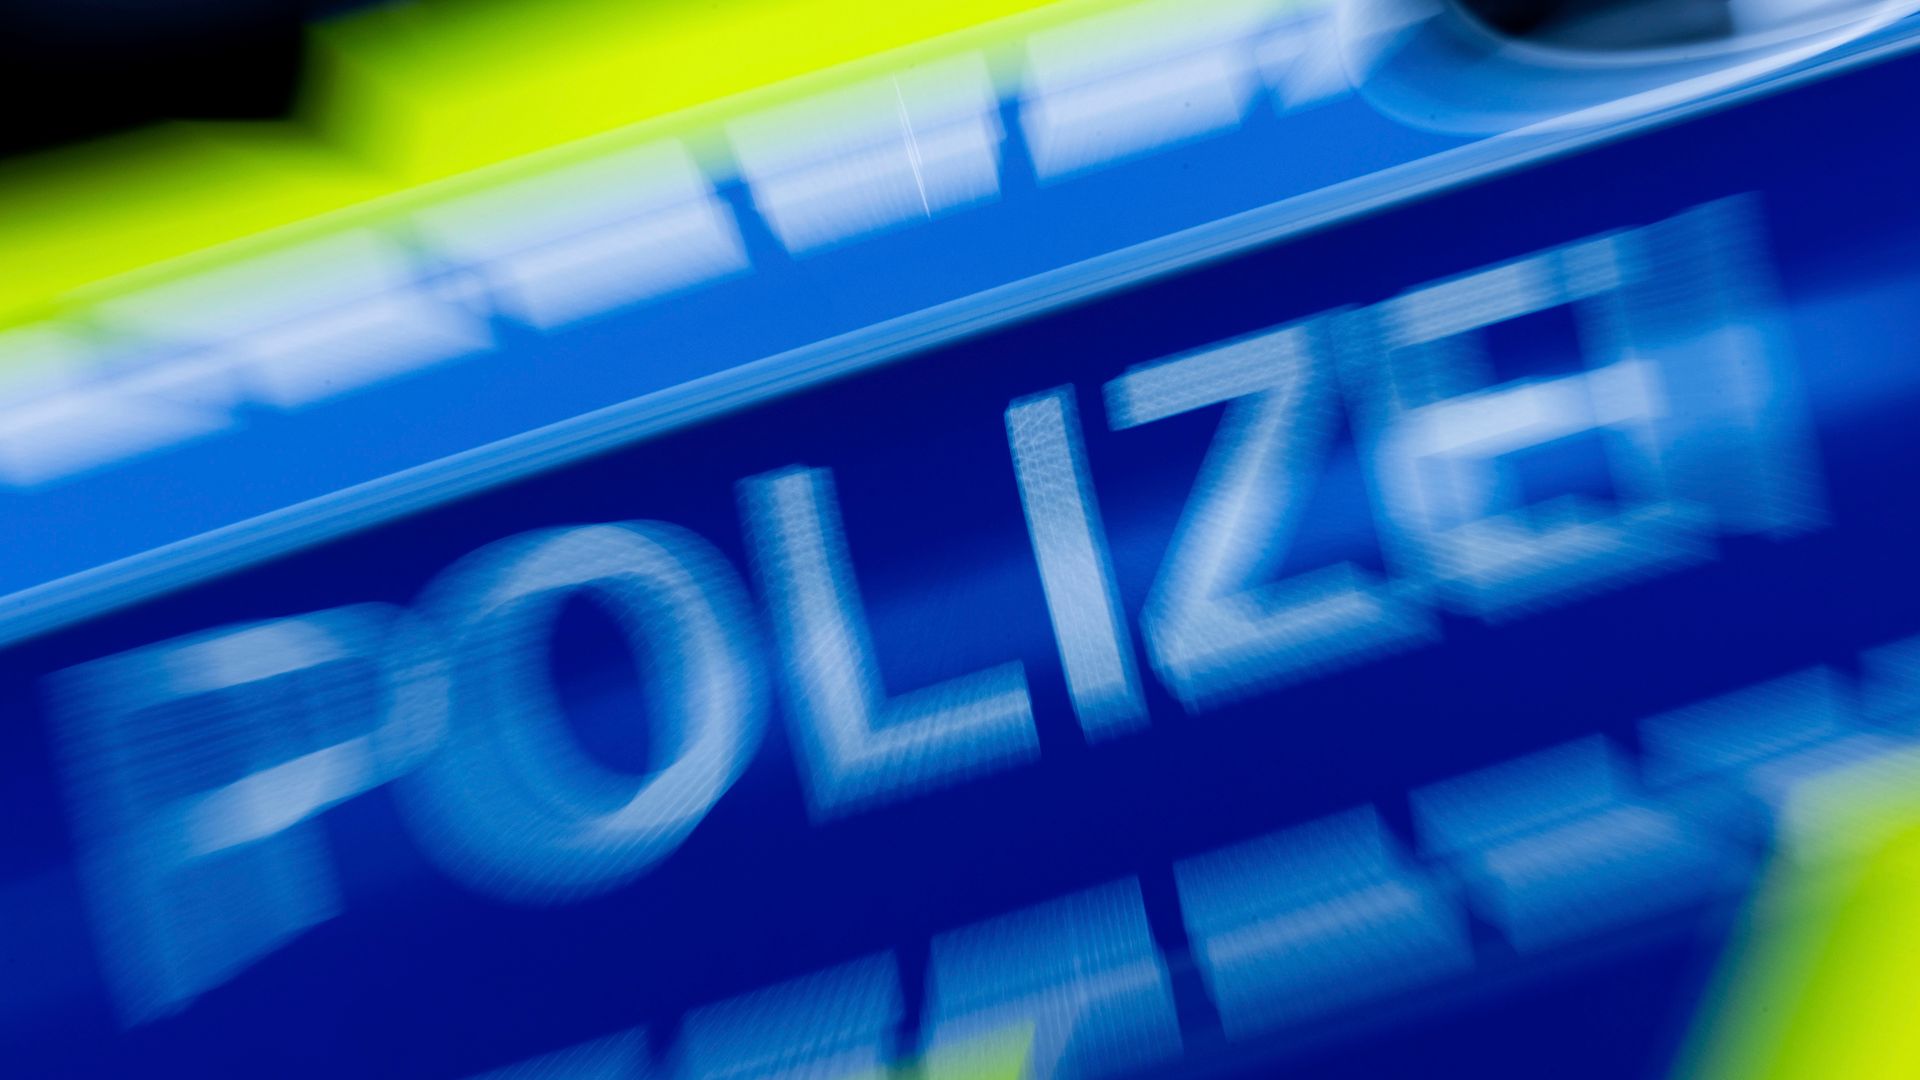 düsseldorf: jugendliche stürzt aus hotelfenster und stirbt